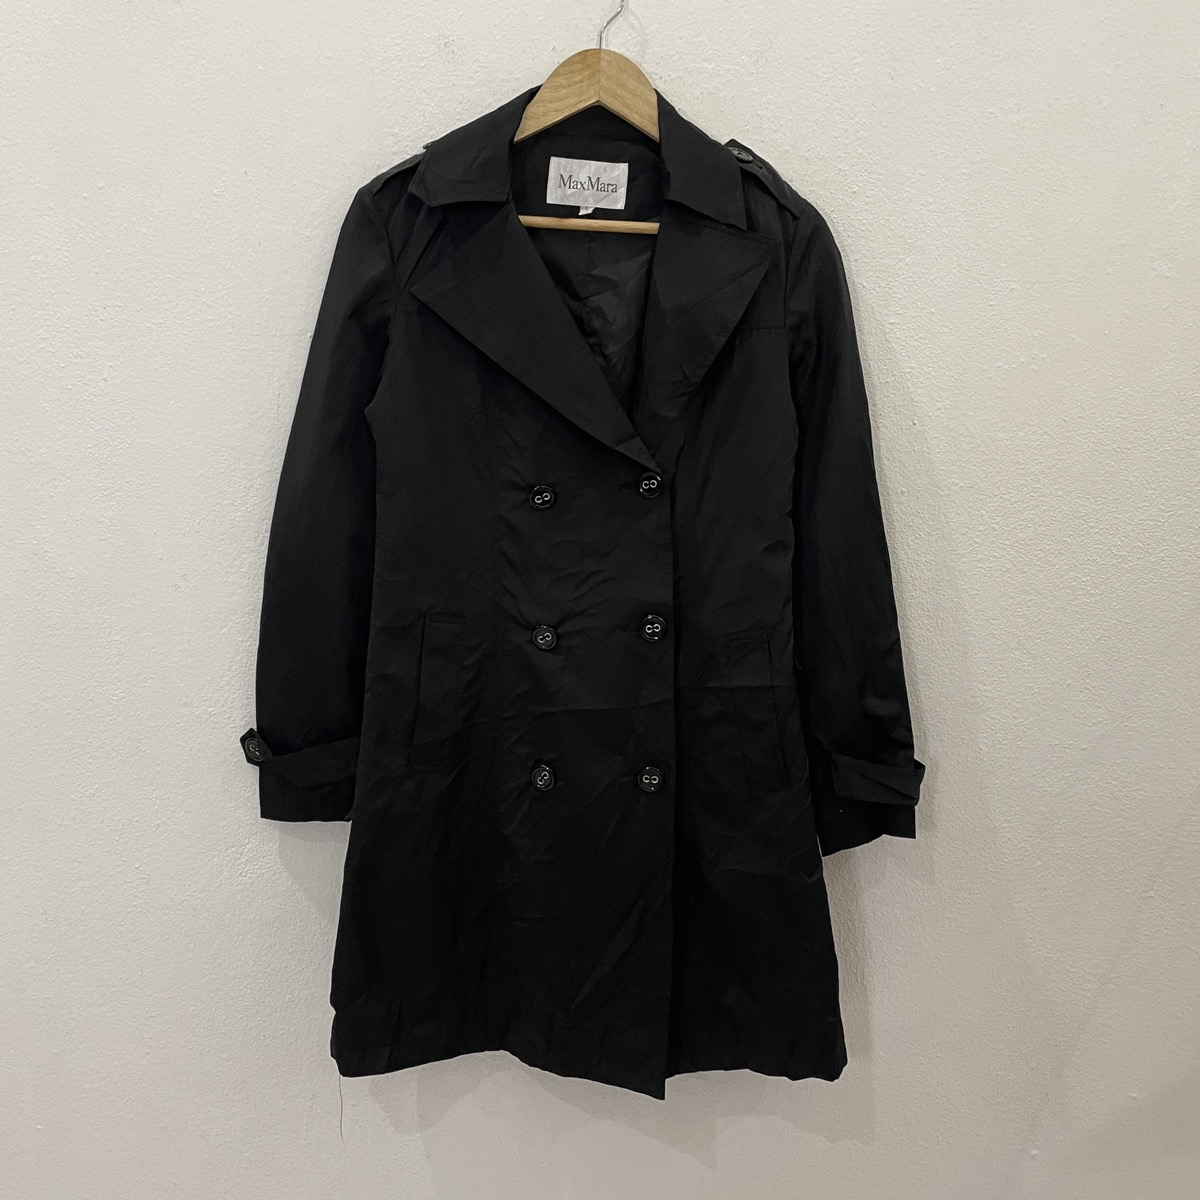 Vintage Maxmara Trench Coat Jacket - 1